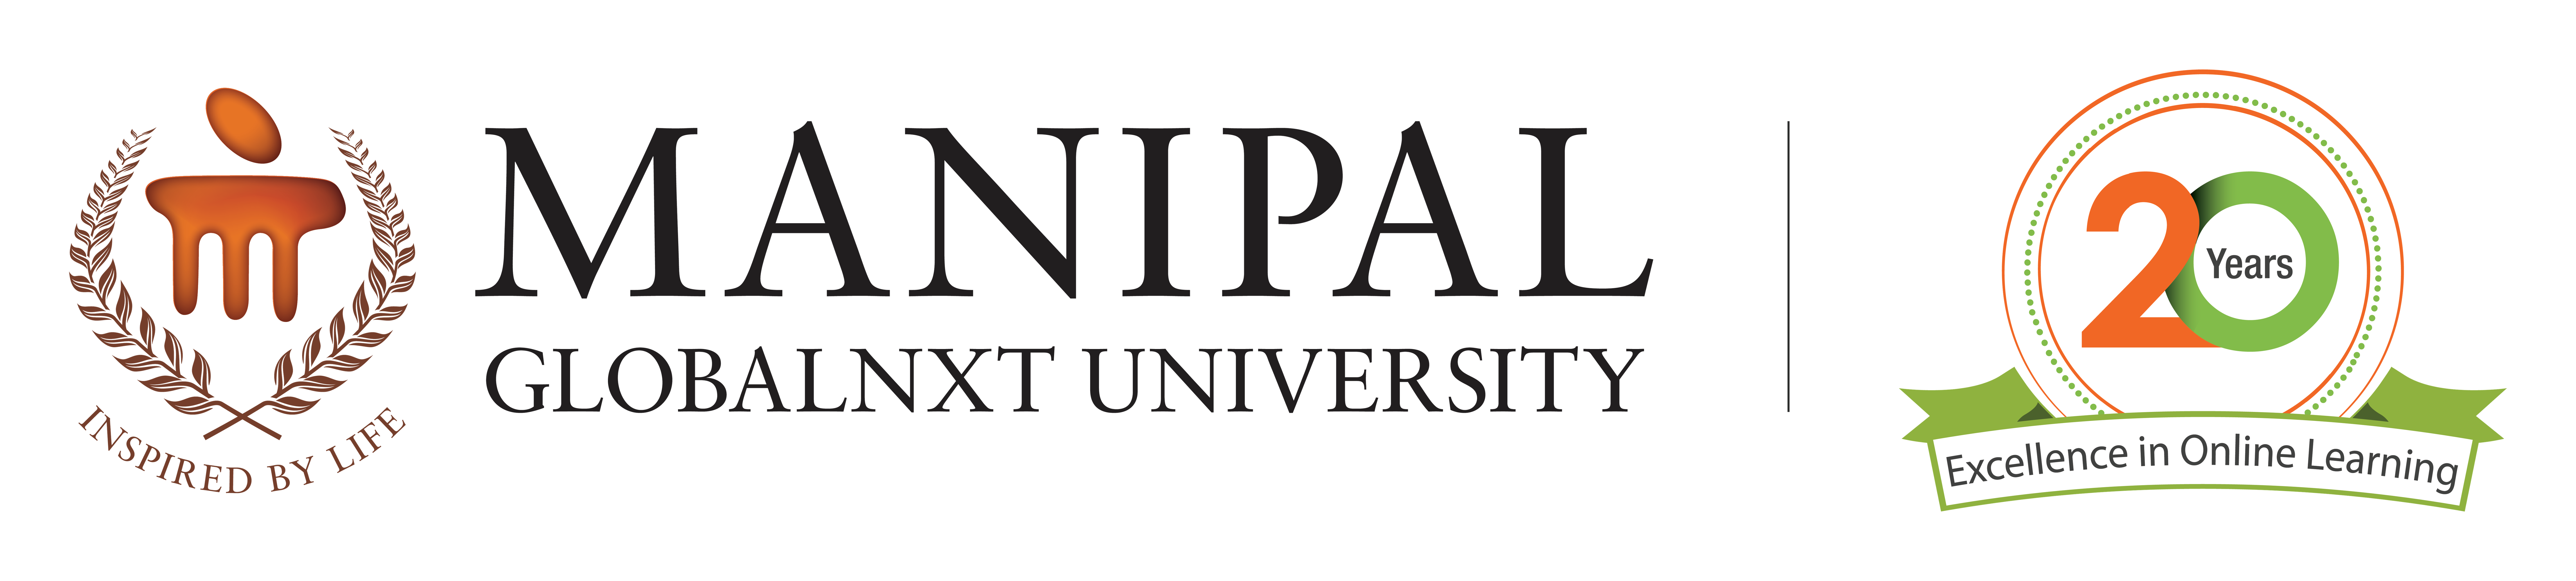 Manipal GlobalNxt University Logo